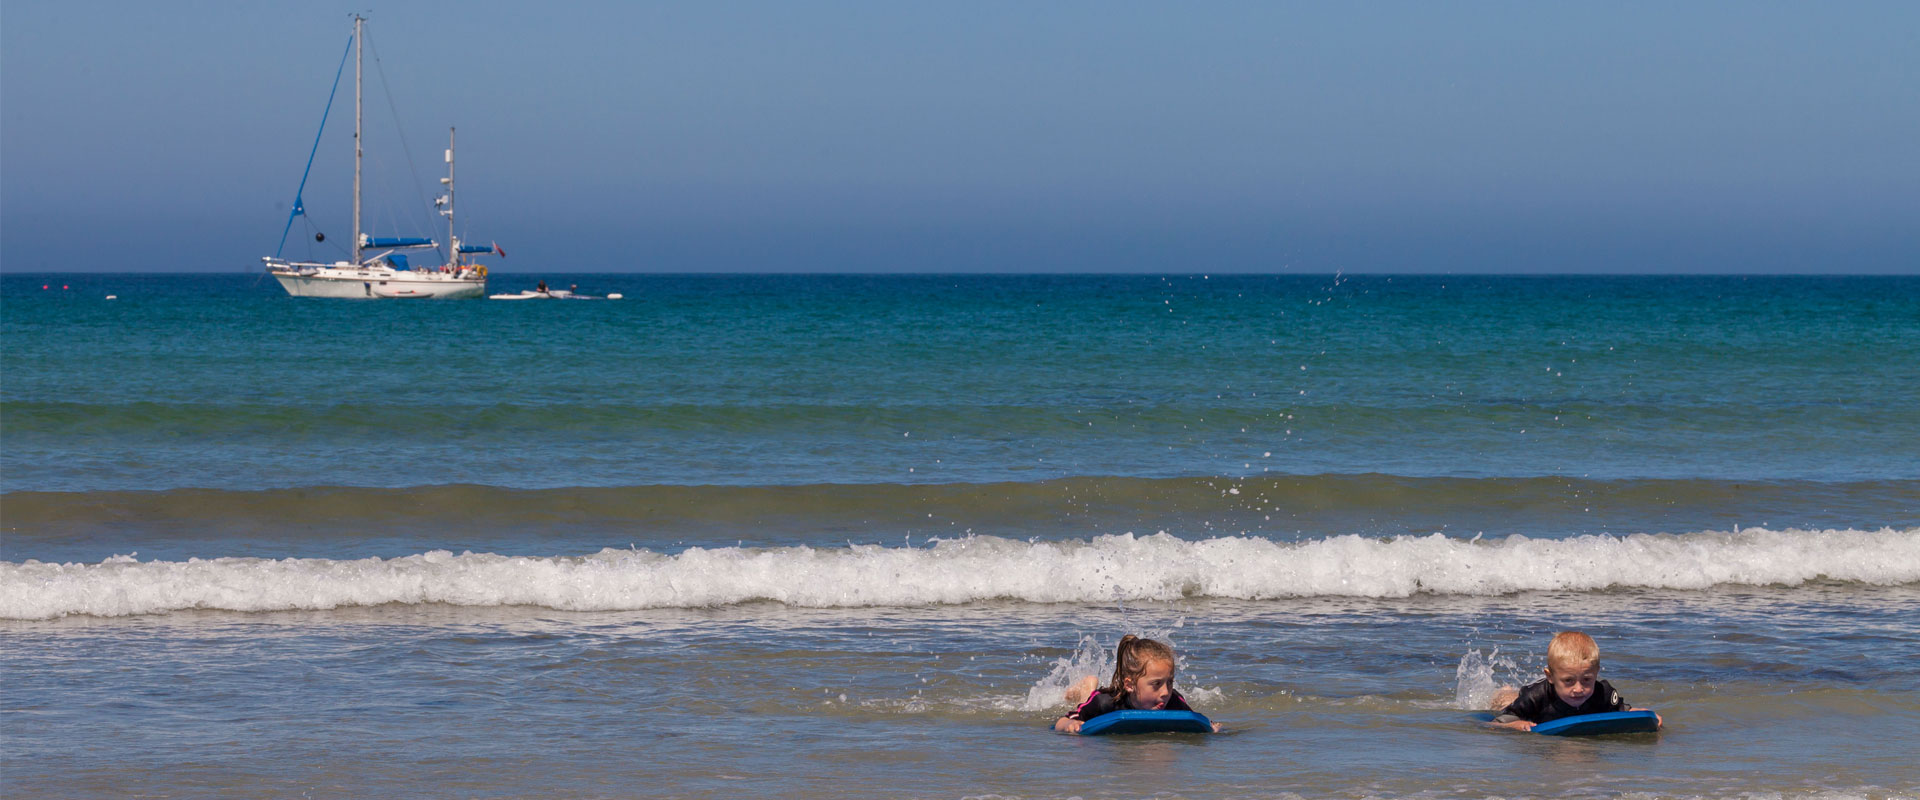 Children wave-boarding - Images courtesy of VisitGuernsey